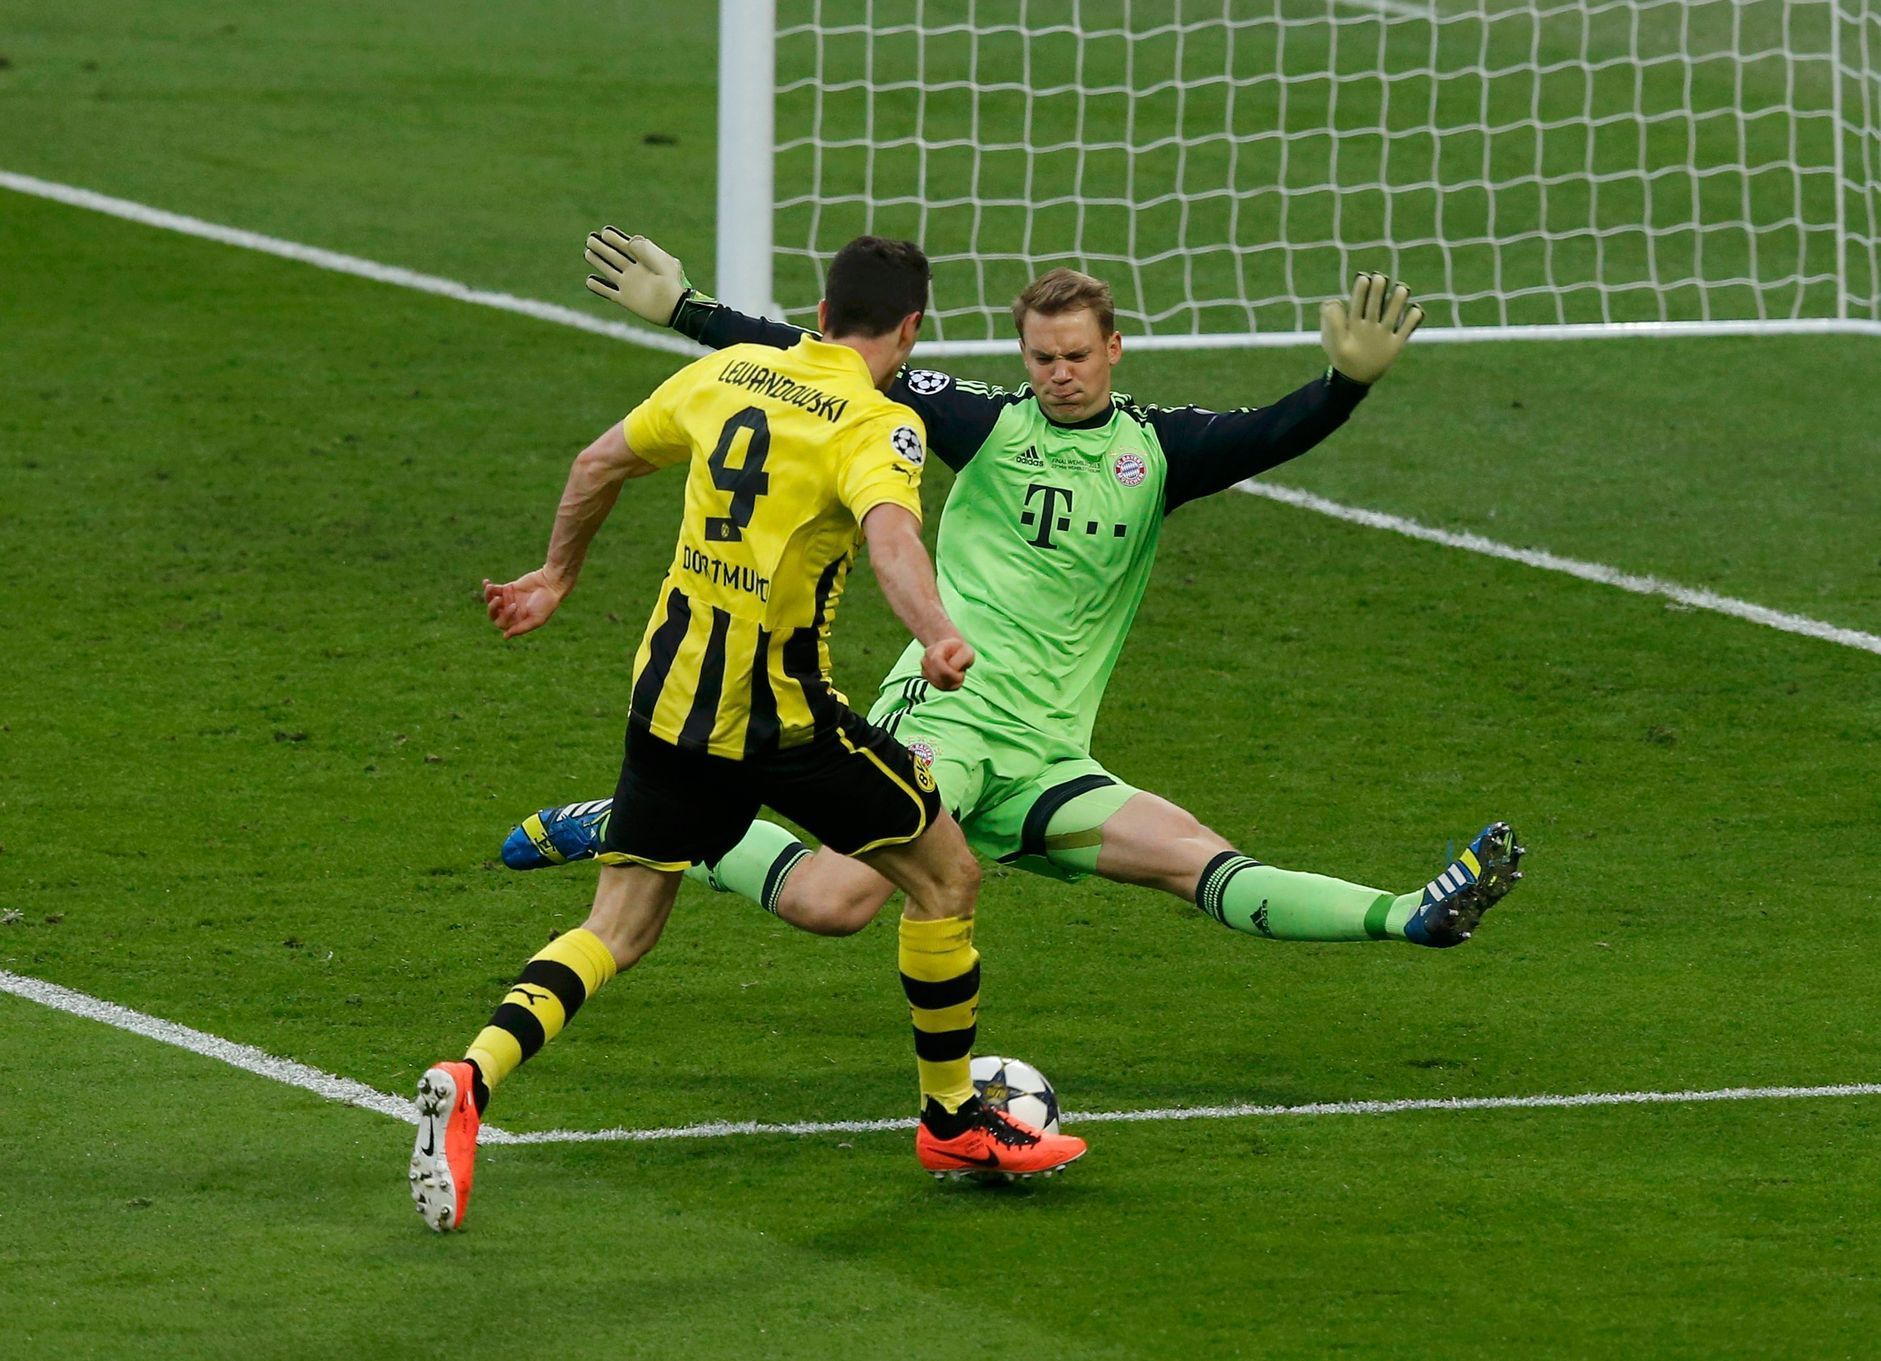 Fotbal, Liga mistrů, Bayern - Dortmund: Manuel Neuer - Robert Lewandowski (vpředu)